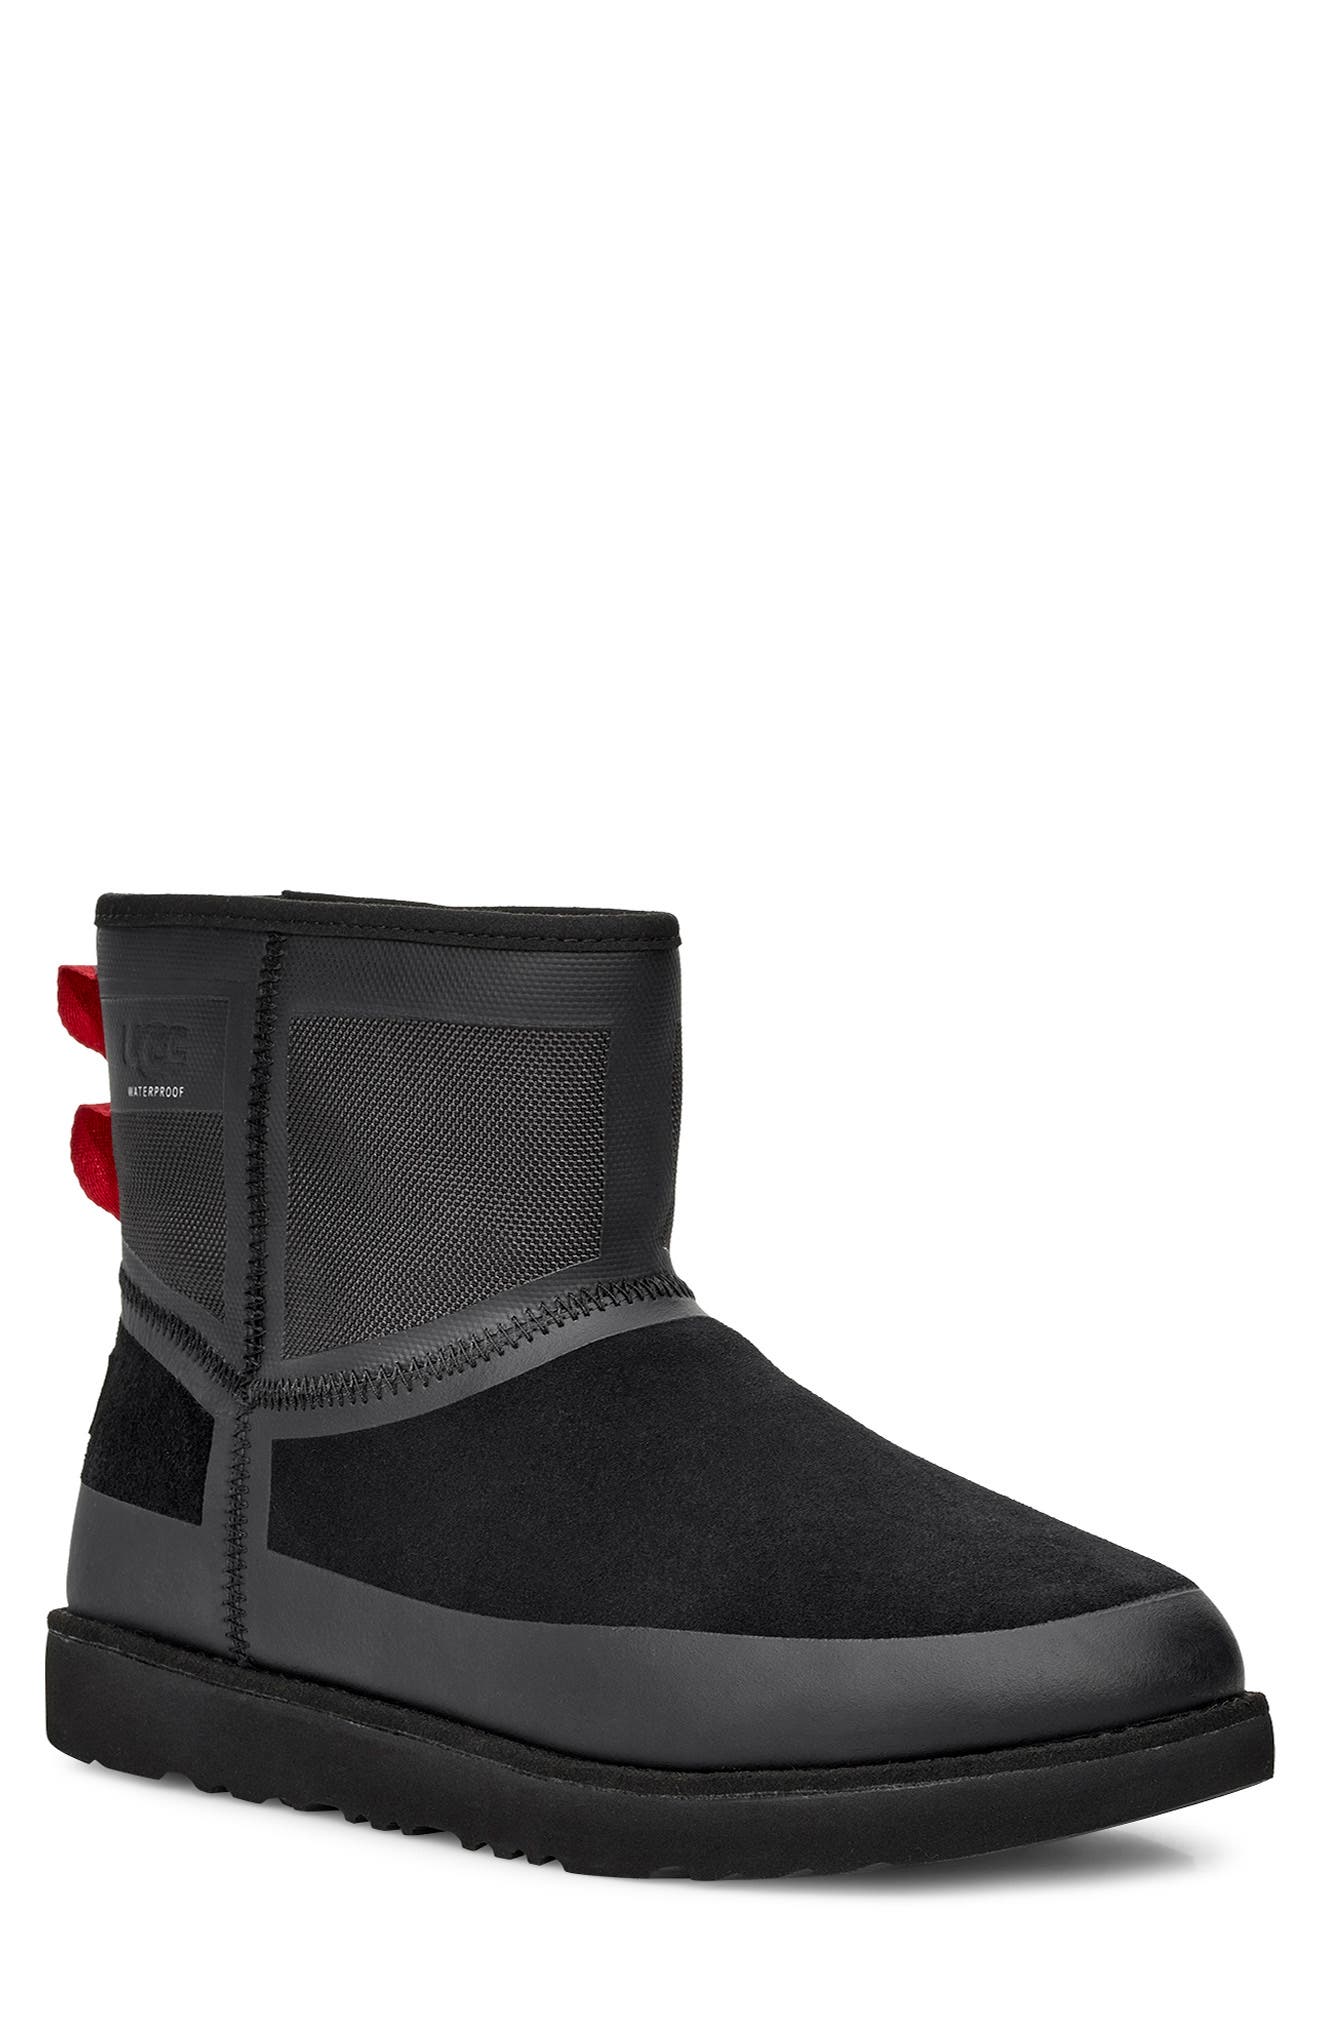 ugg waterproof boots for men